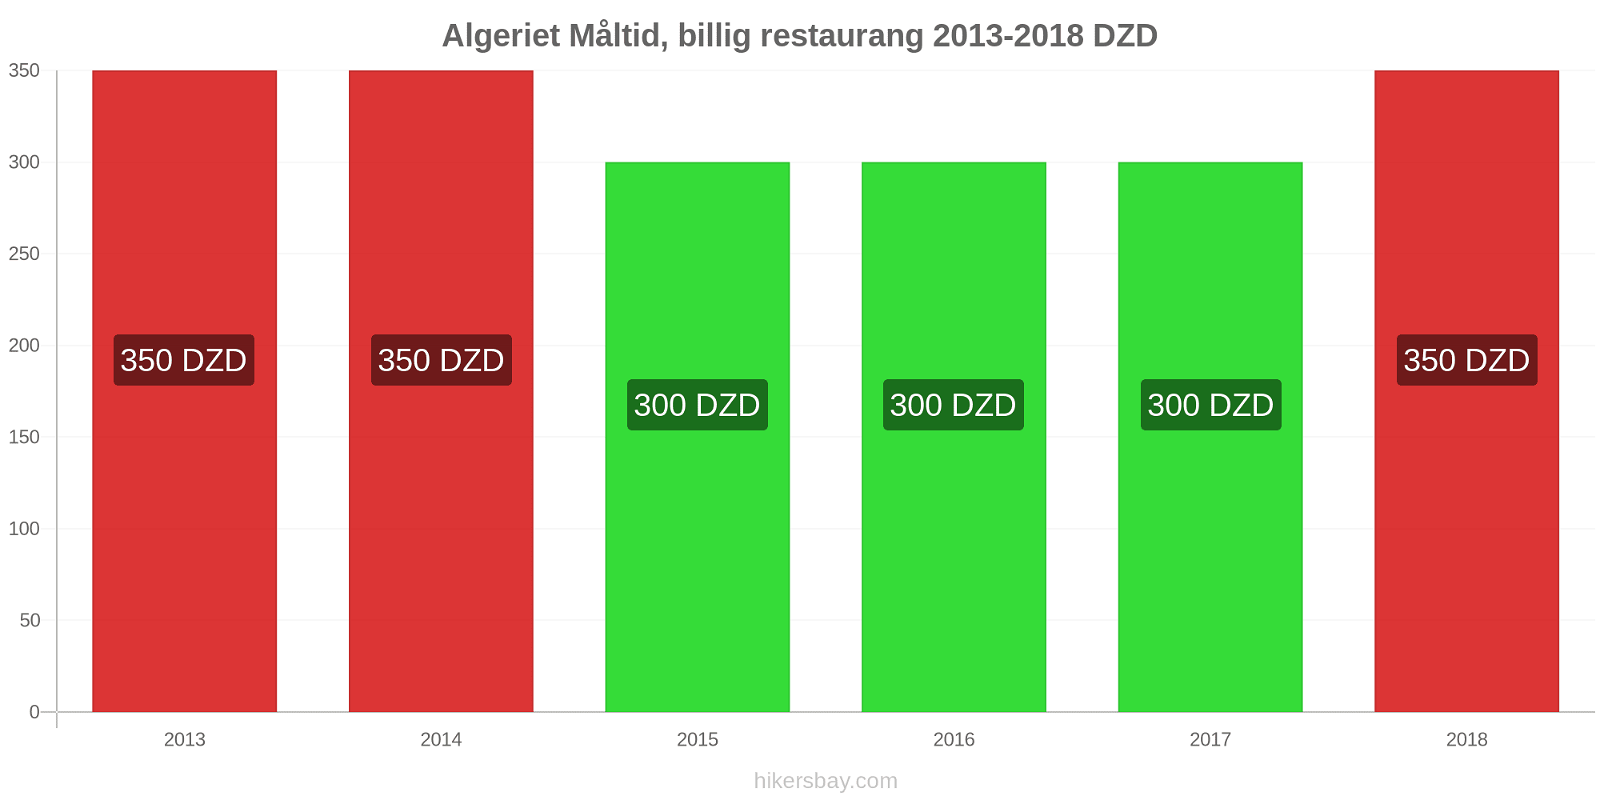 Algeriet prisändringar Måltid i en billig restaurang hikersbay.com